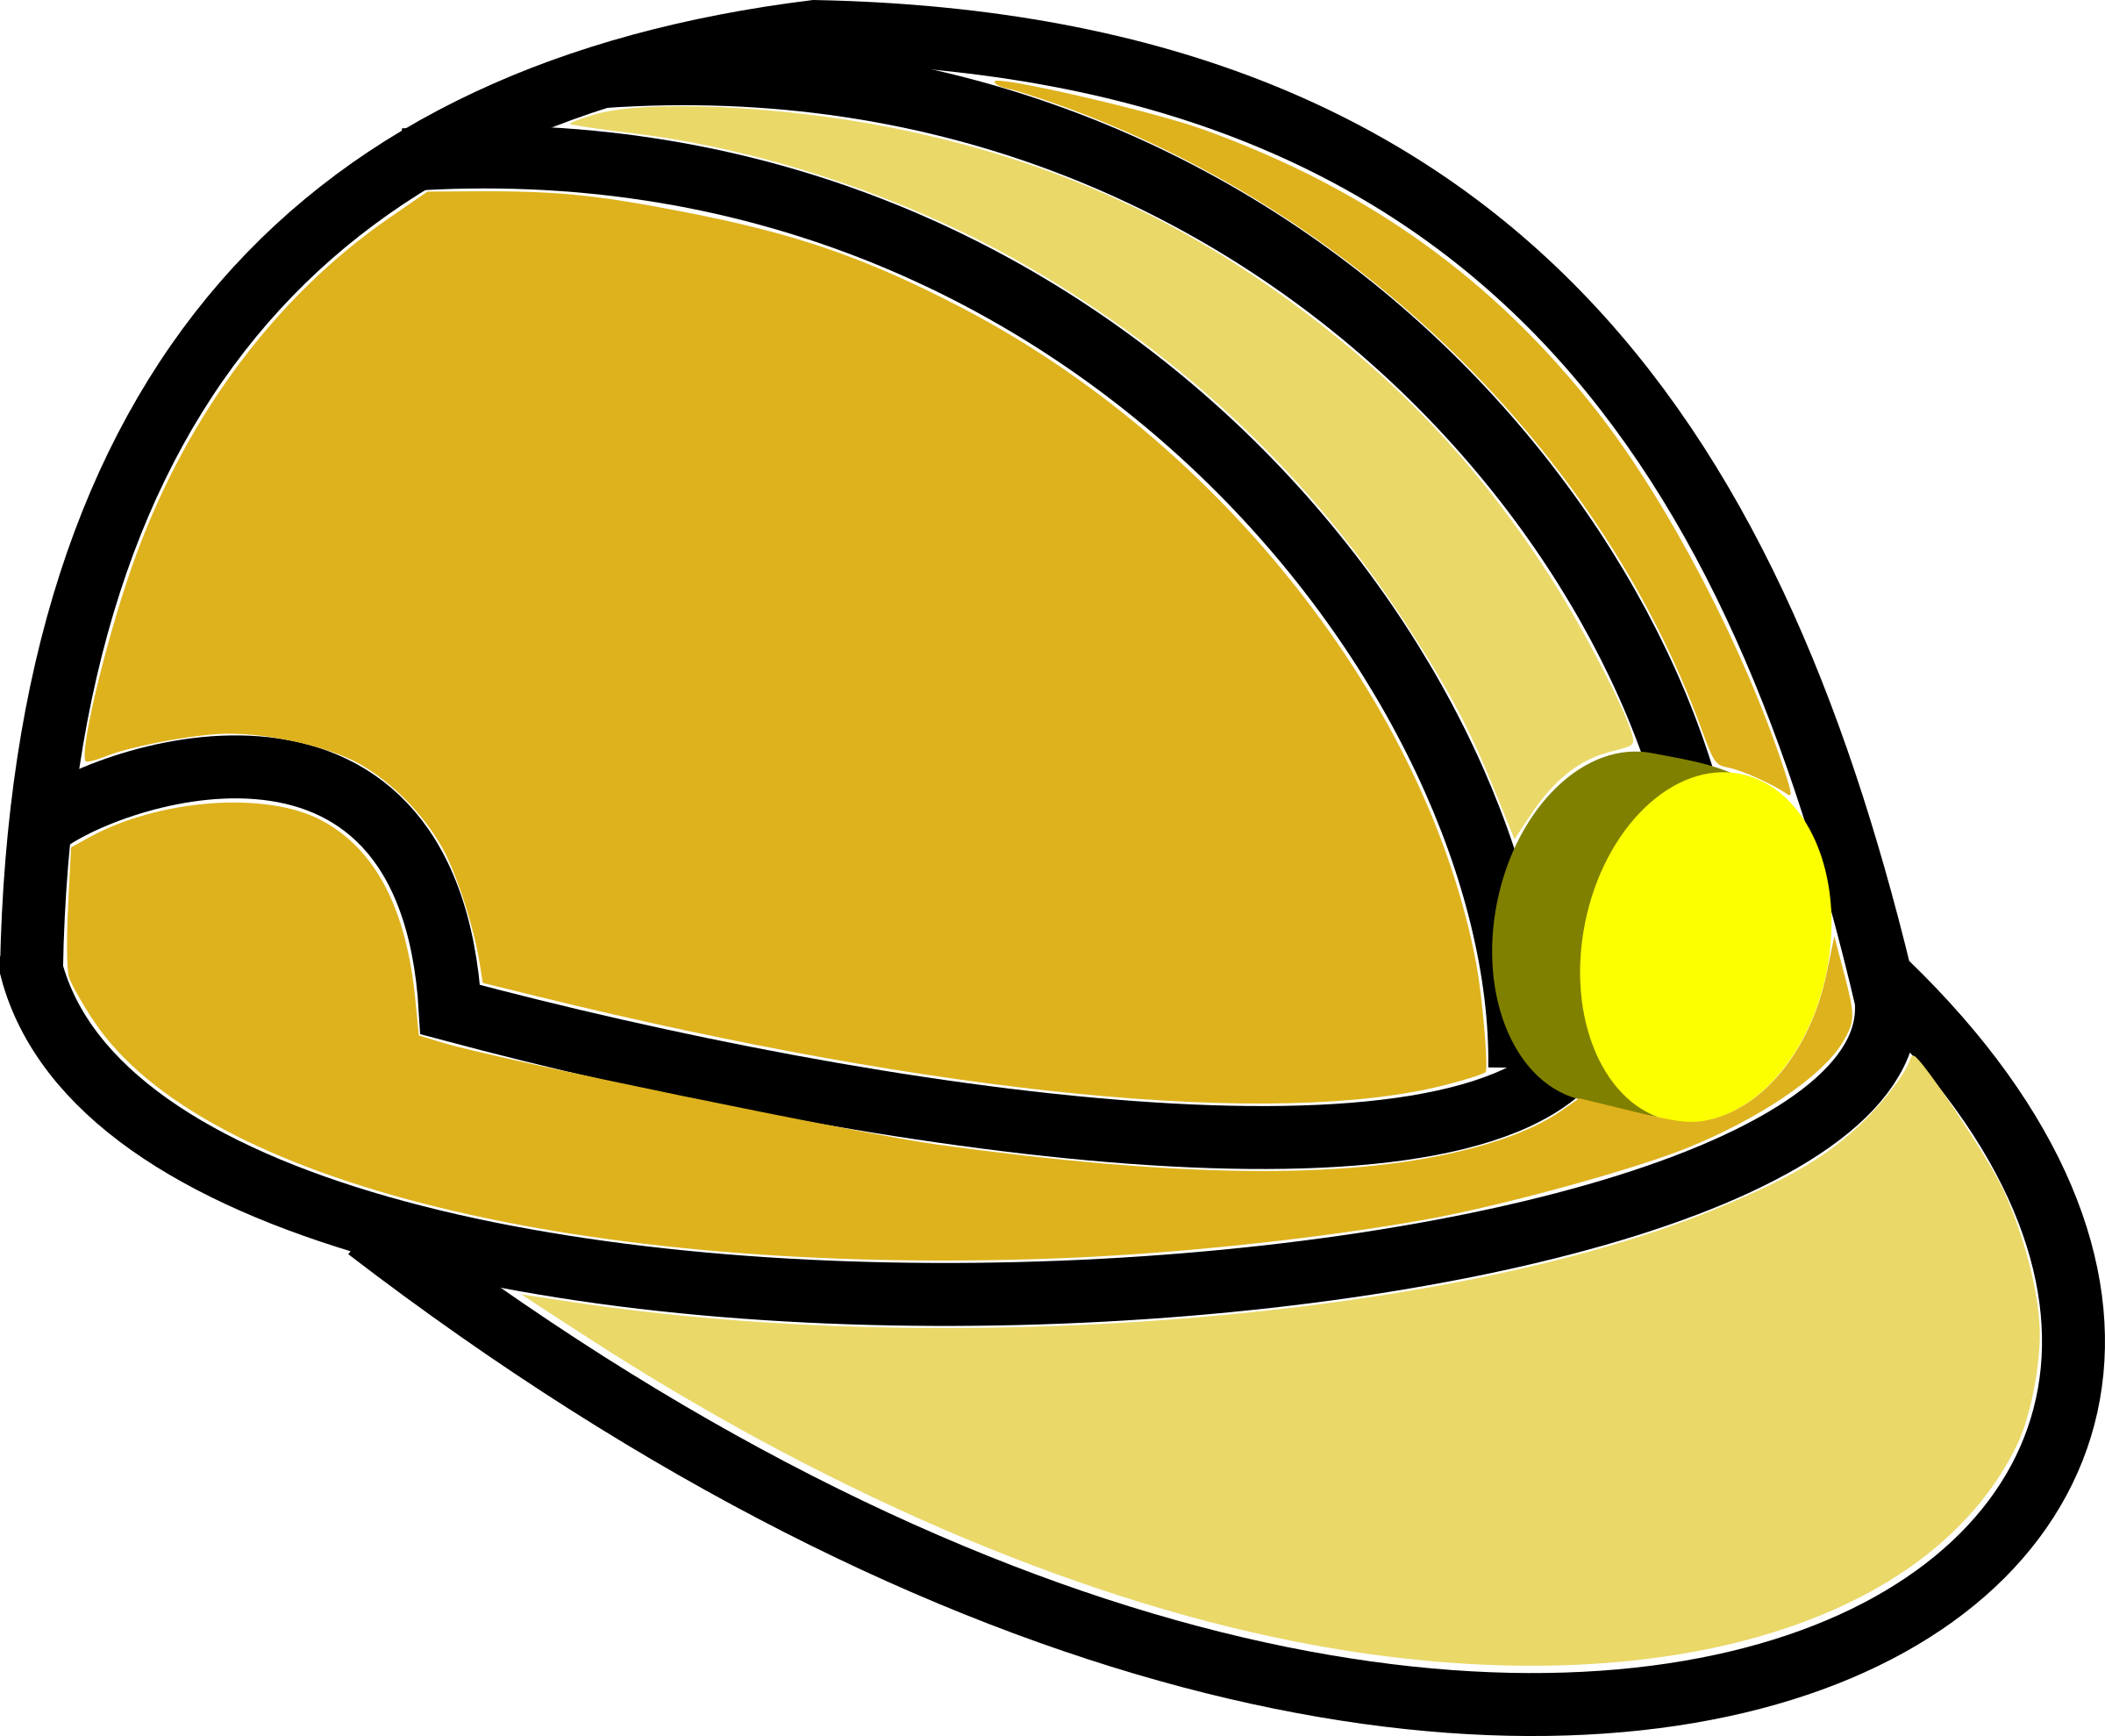 mining clipart mining helmet